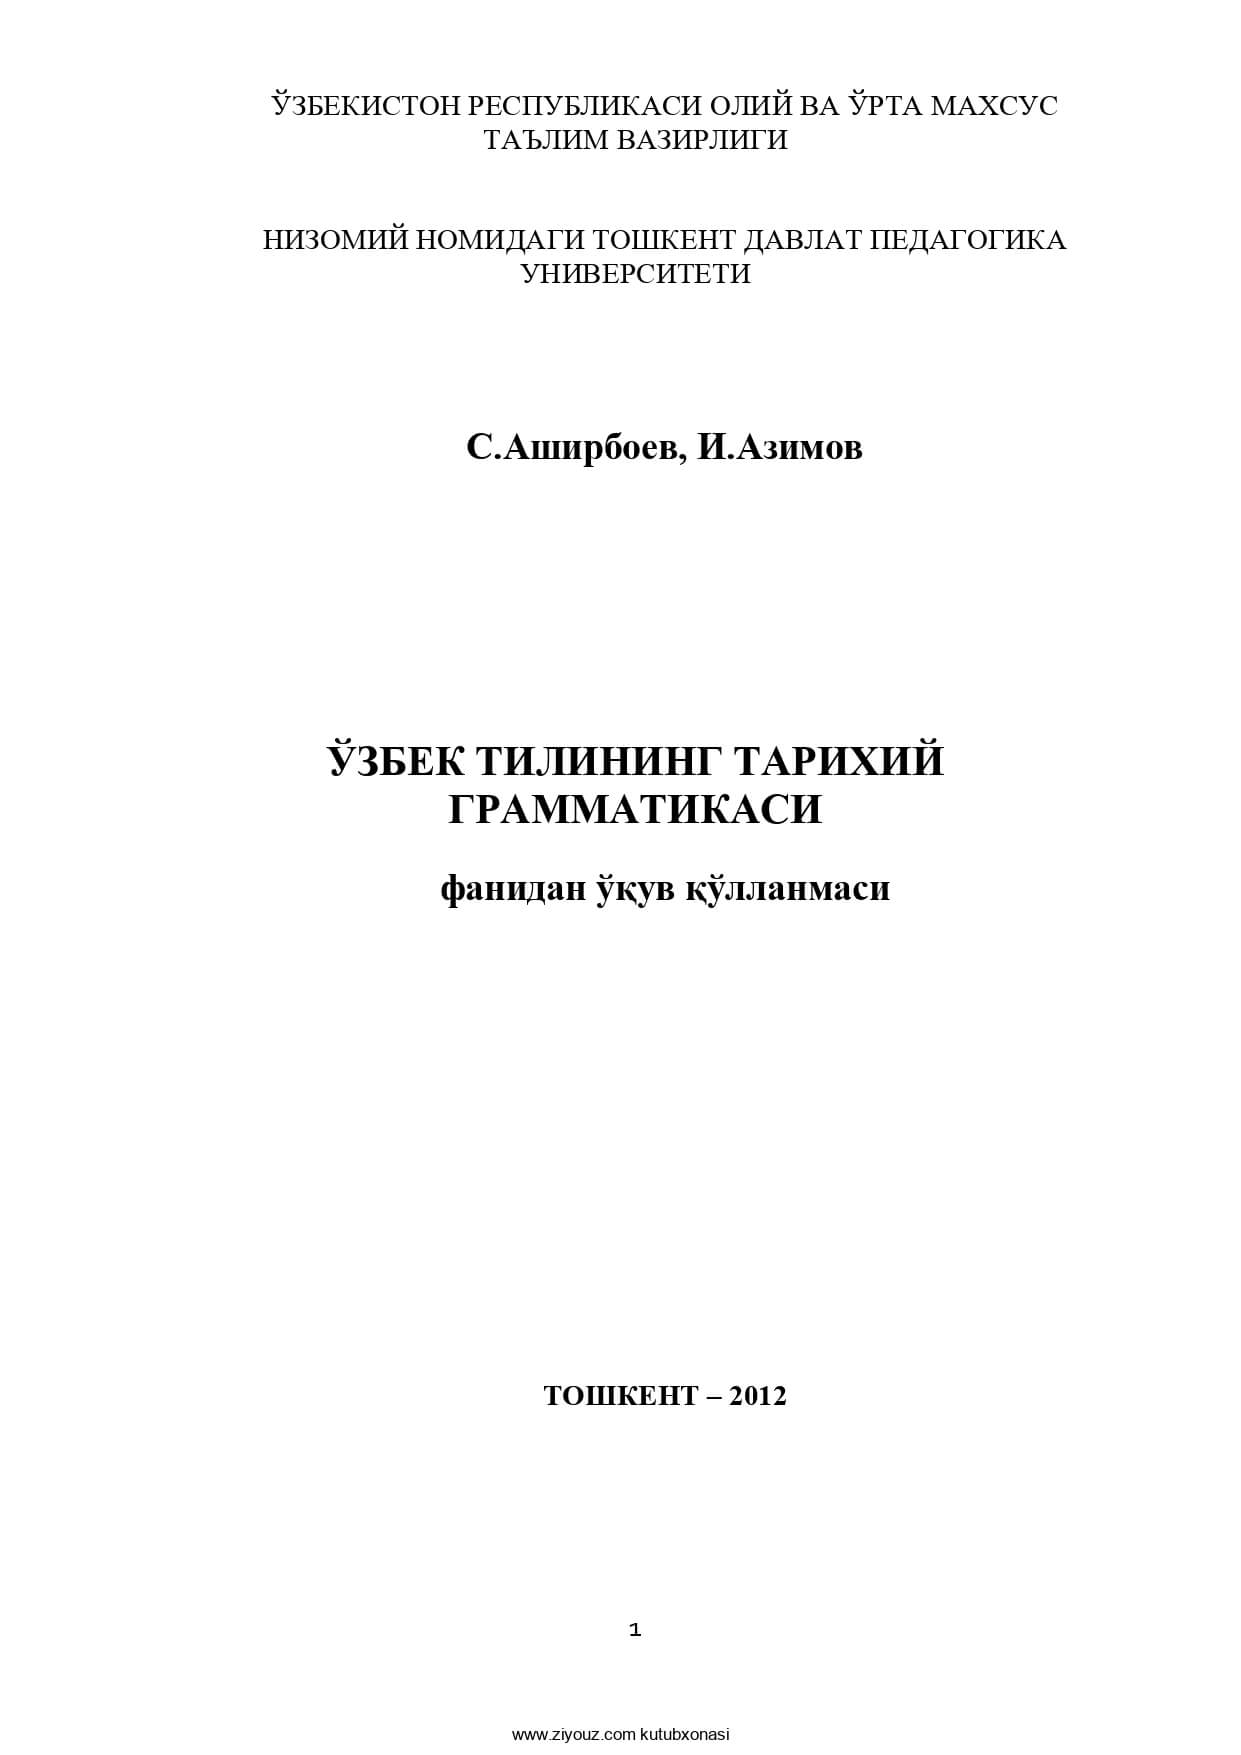 S.Ashirboyev, I.Azimov. O'zbek tilining tarixiy grammatikasi